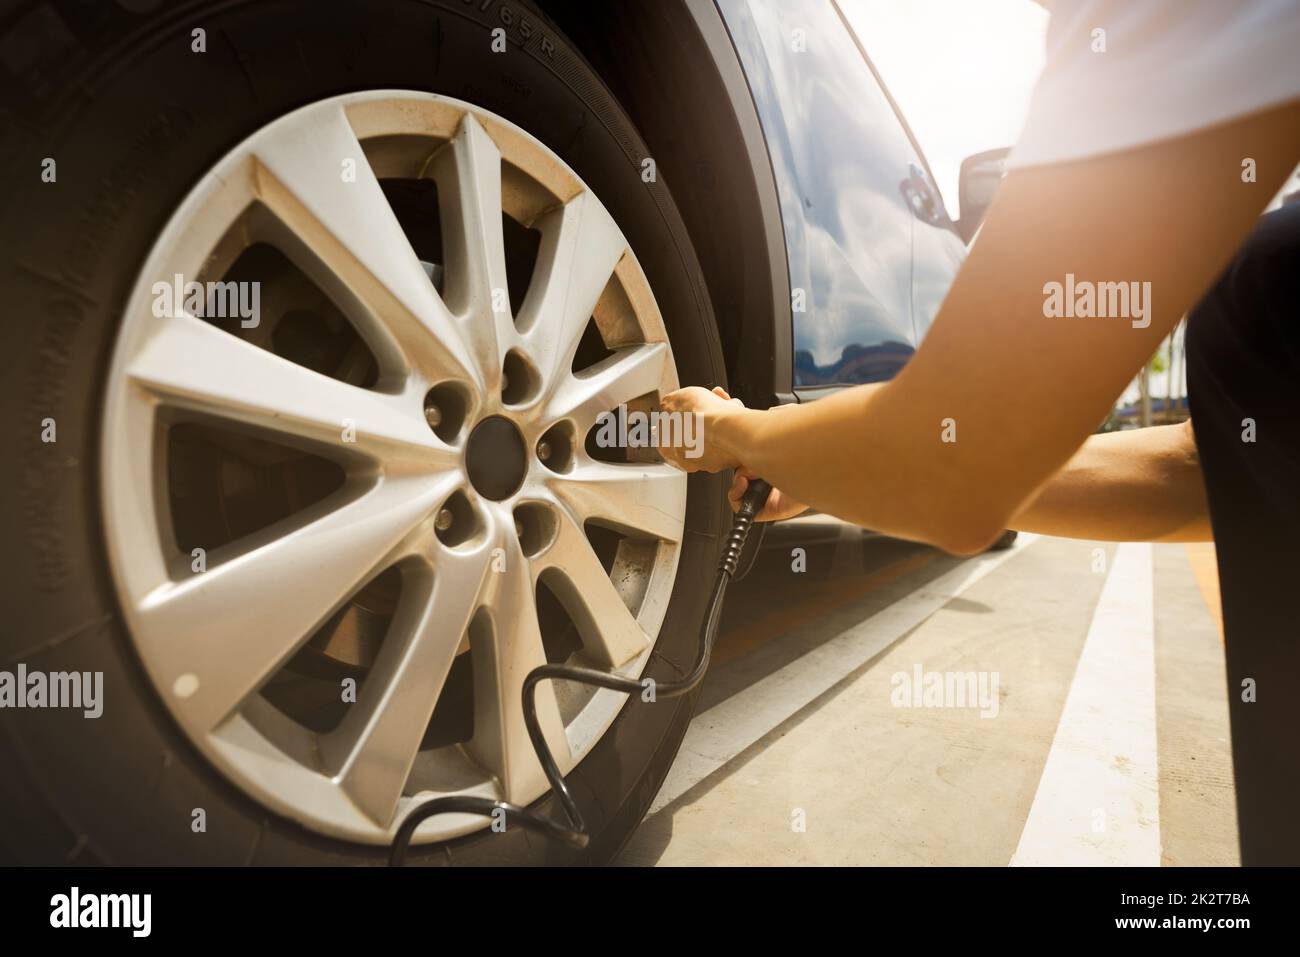 Donna gonfia il pneumatico. Donna che controlla la pressione degli pneumatici e che pompa aria nello pneumatico della ruota dell'automobile. Servizio di manutenzione dell'auto per la sicurezza prima del viaggio. Punto di gonfiaggio pneumatico. Riempimento di aria nello pneumatico dell'auto Foto Stock